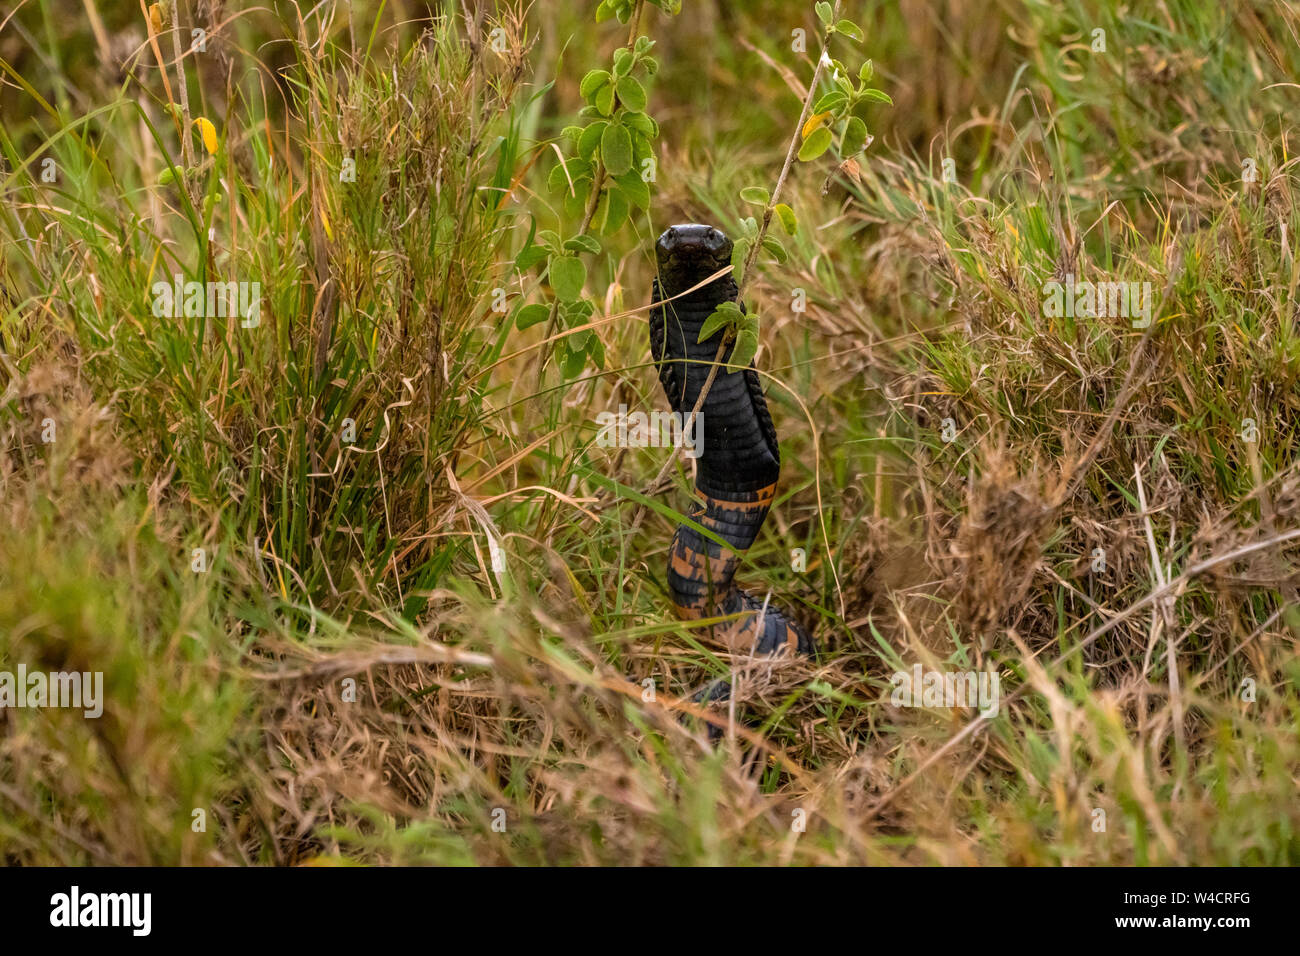 Wald Kobra (Naja lalage) auch "die schwarze Kobra und die schwarz-weiß-lippigen Cobra. In der Wildnis in der Serengeti Natio fotografiert. Stockfoto